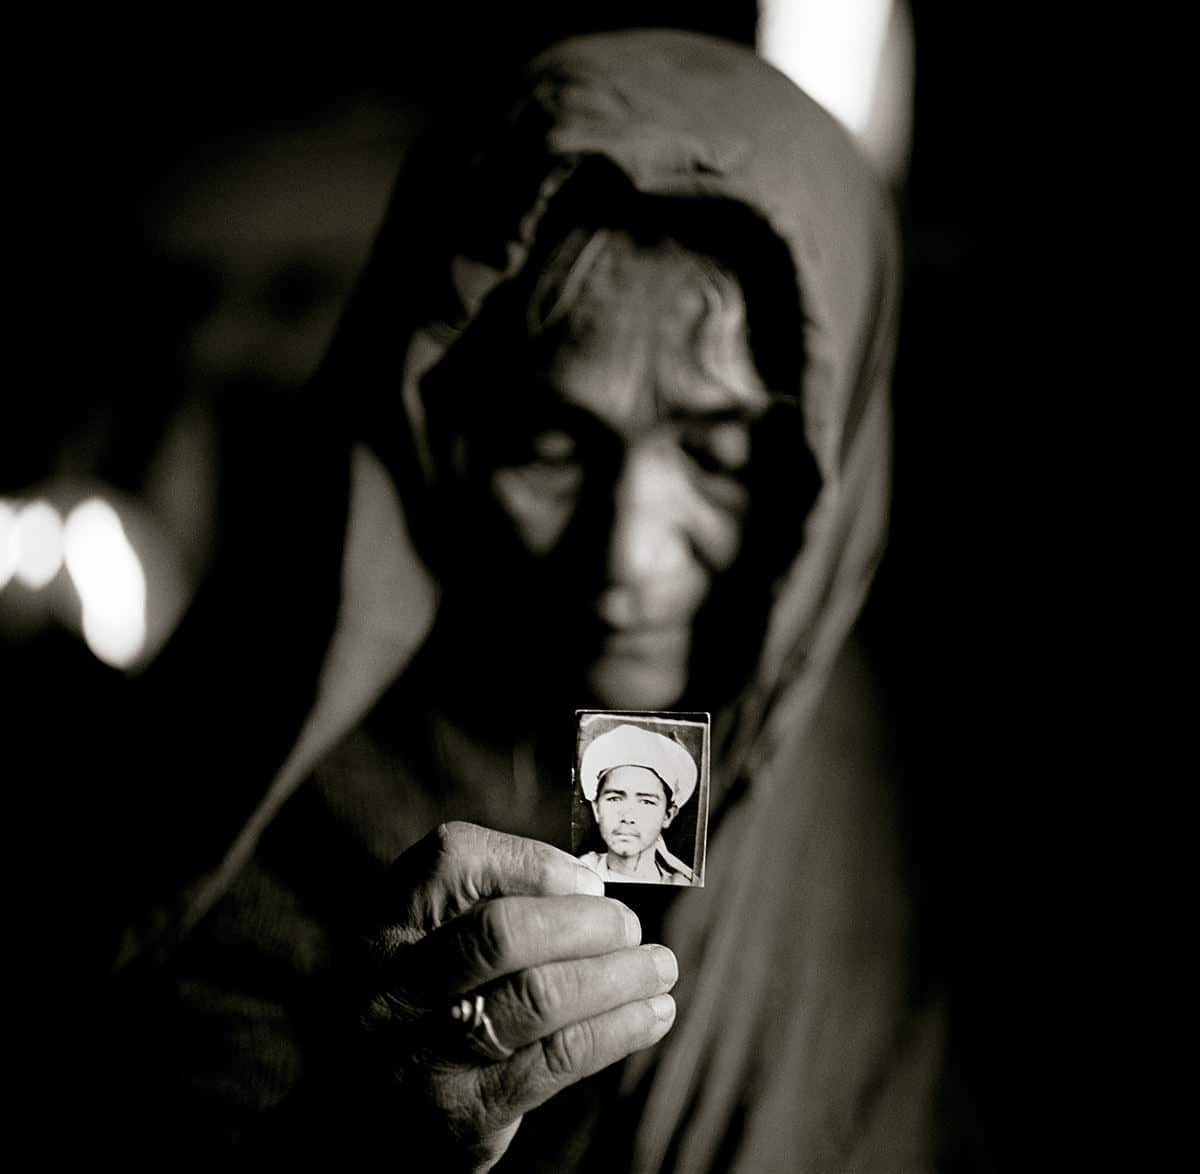 Qurban Gul with a photograph of his son Mula Awaz © Fazal Sheikh 2009 © COLECCIONES Fundación MAPFRE